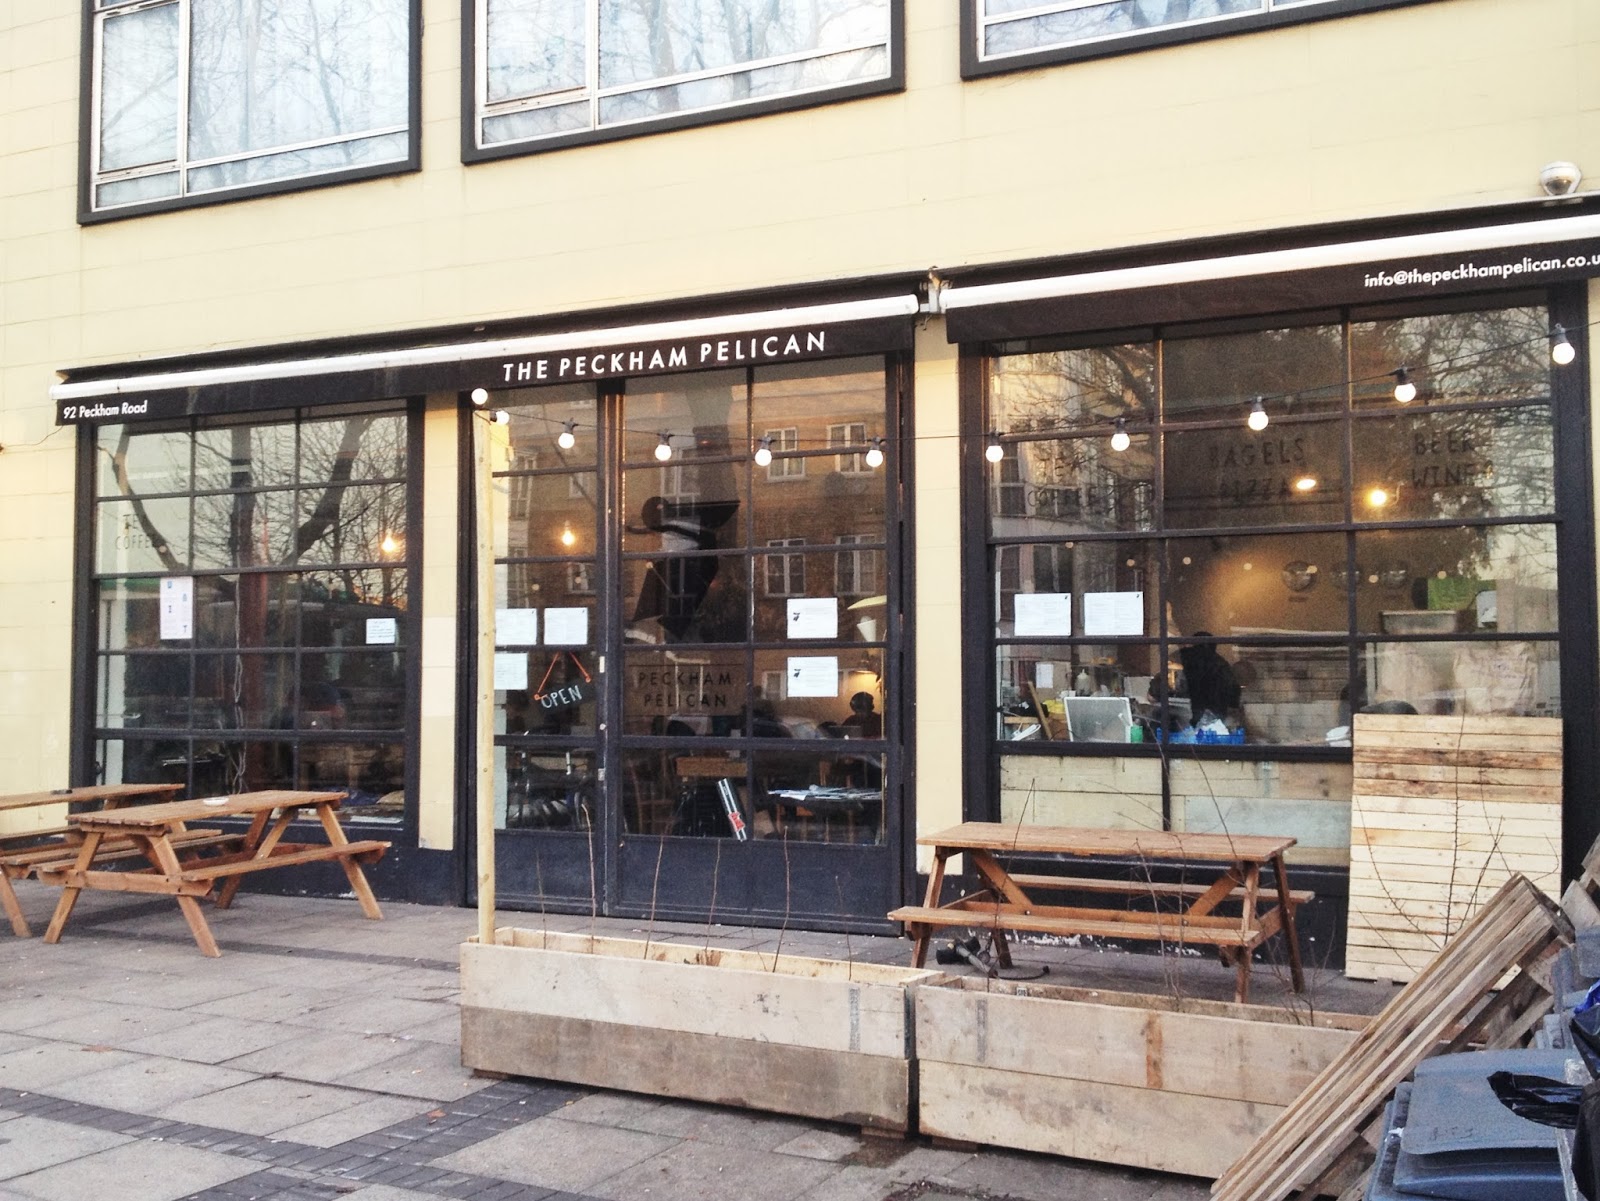 South East London Cafés: The Peckham Pelican: Peckham